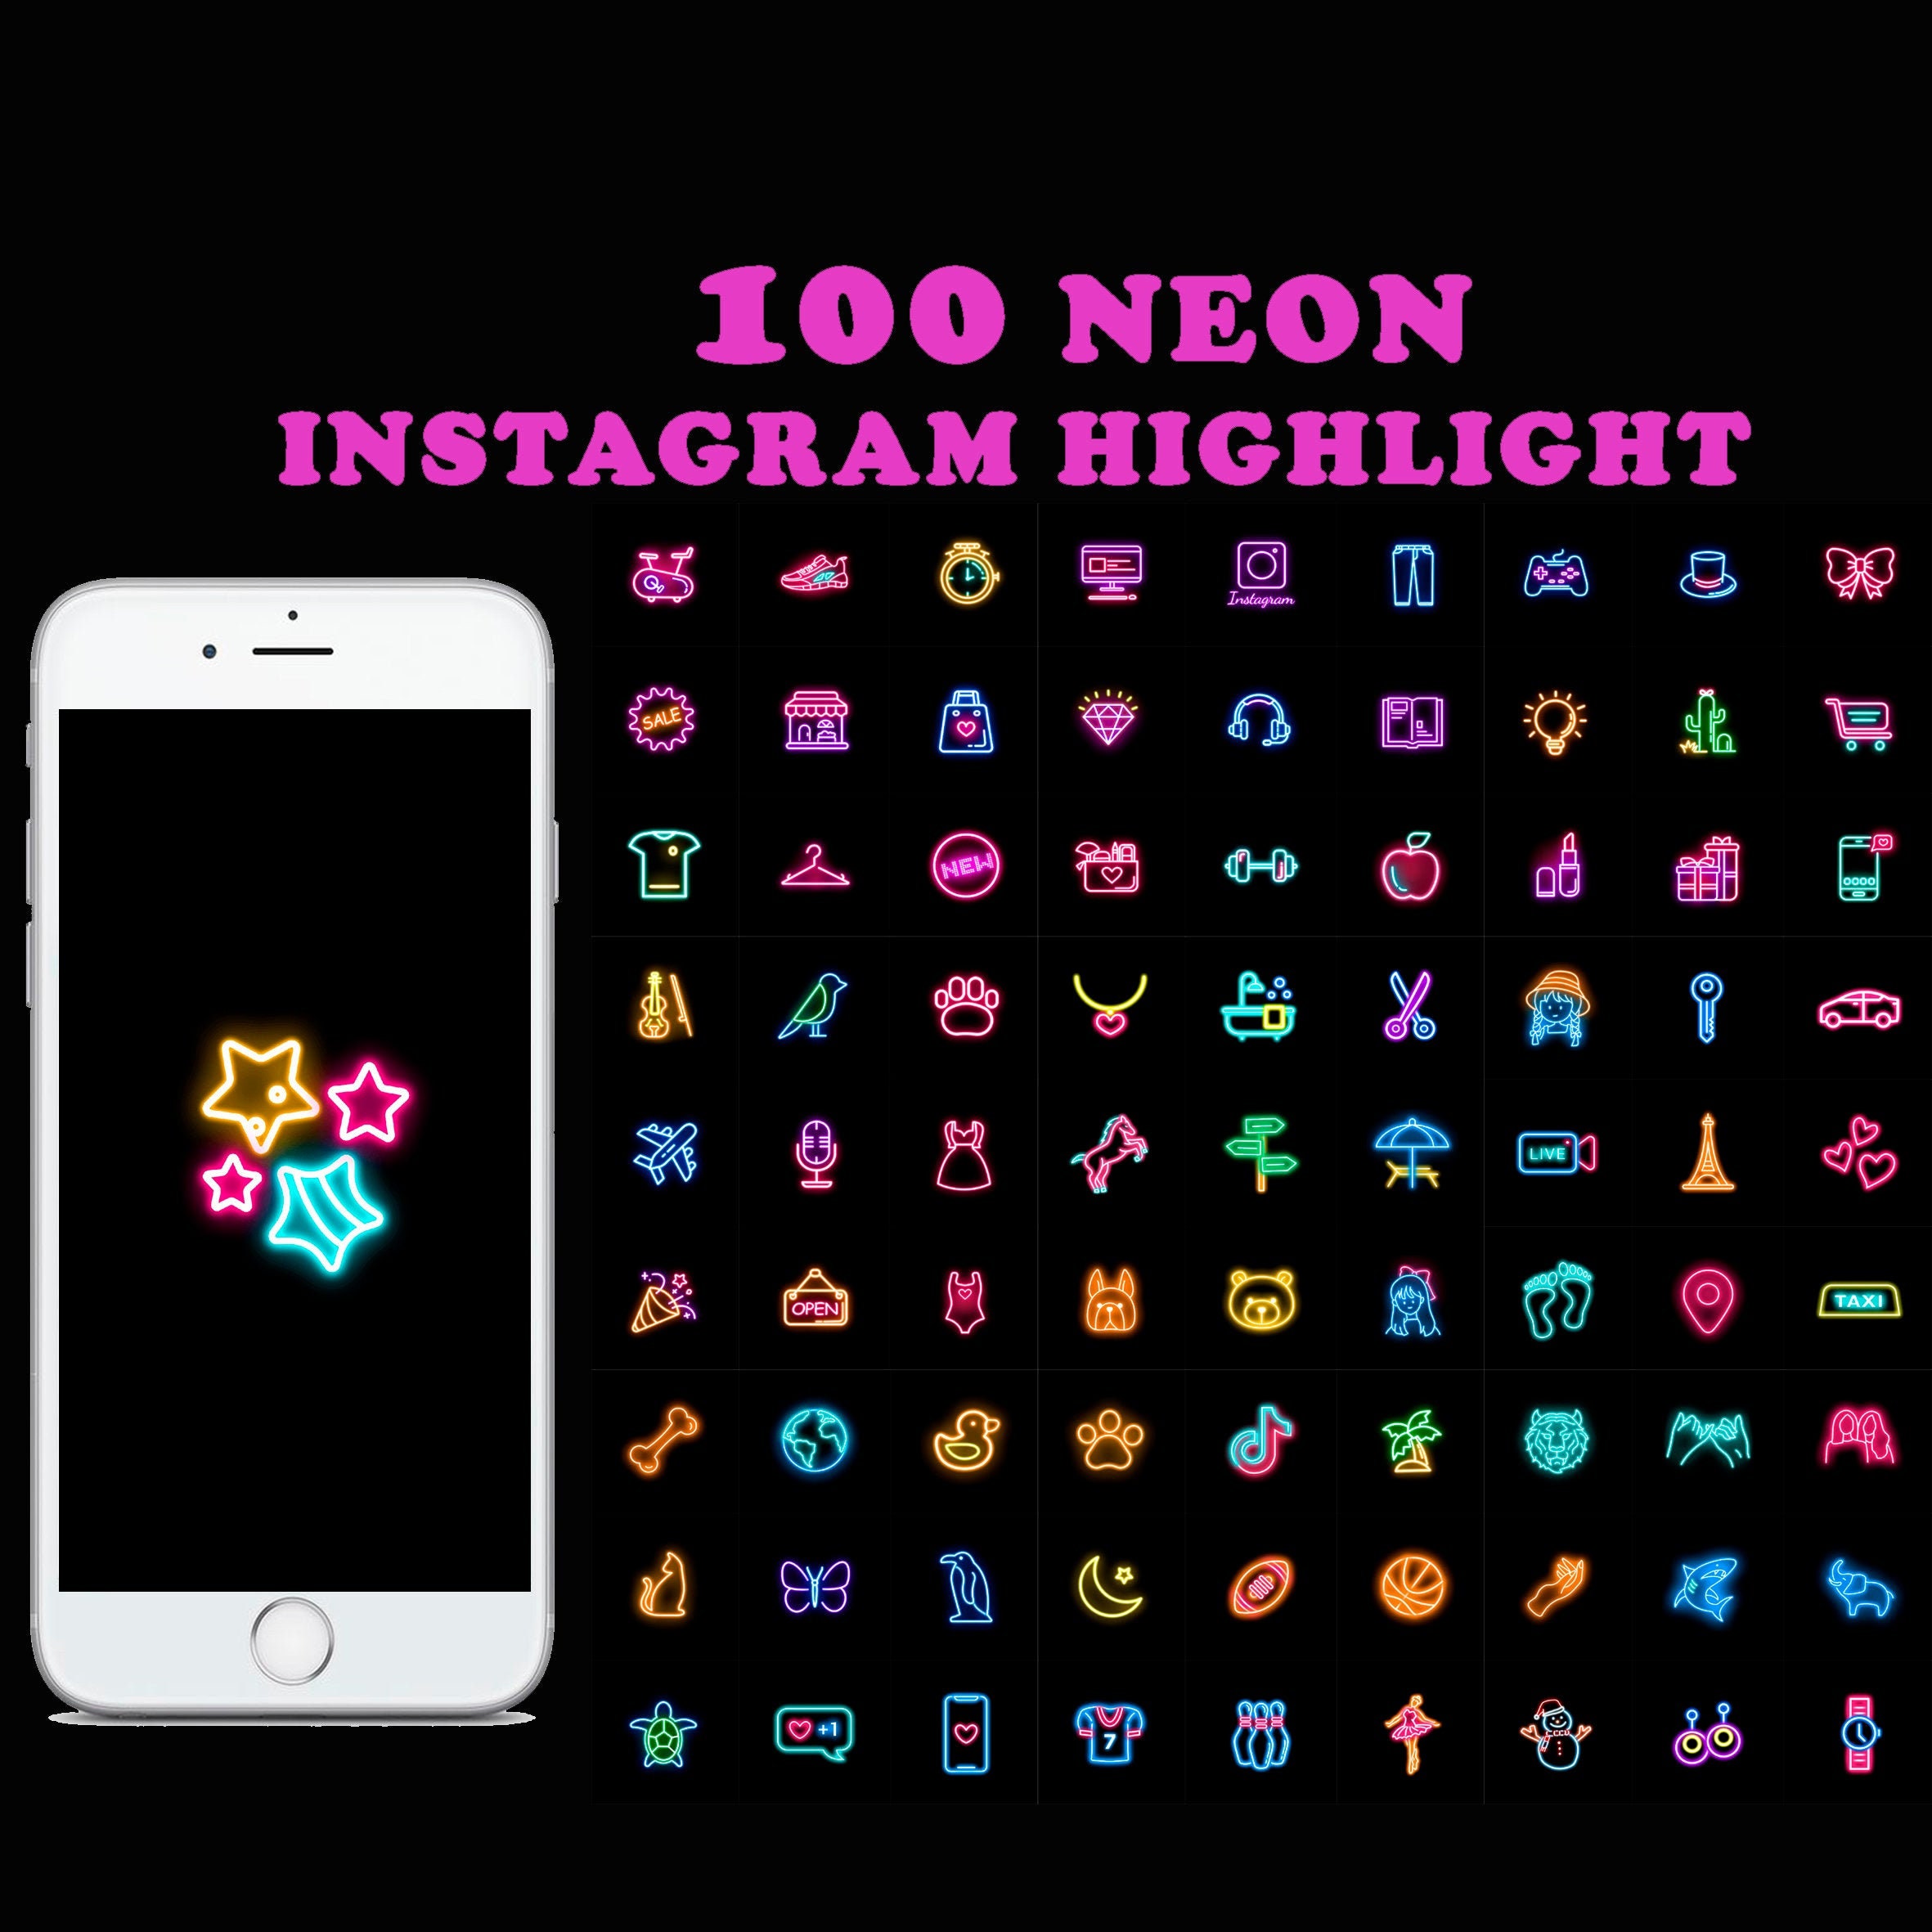 100 Instagram Highlight Covers Neon Bright Social Media Etsy Hong Kong